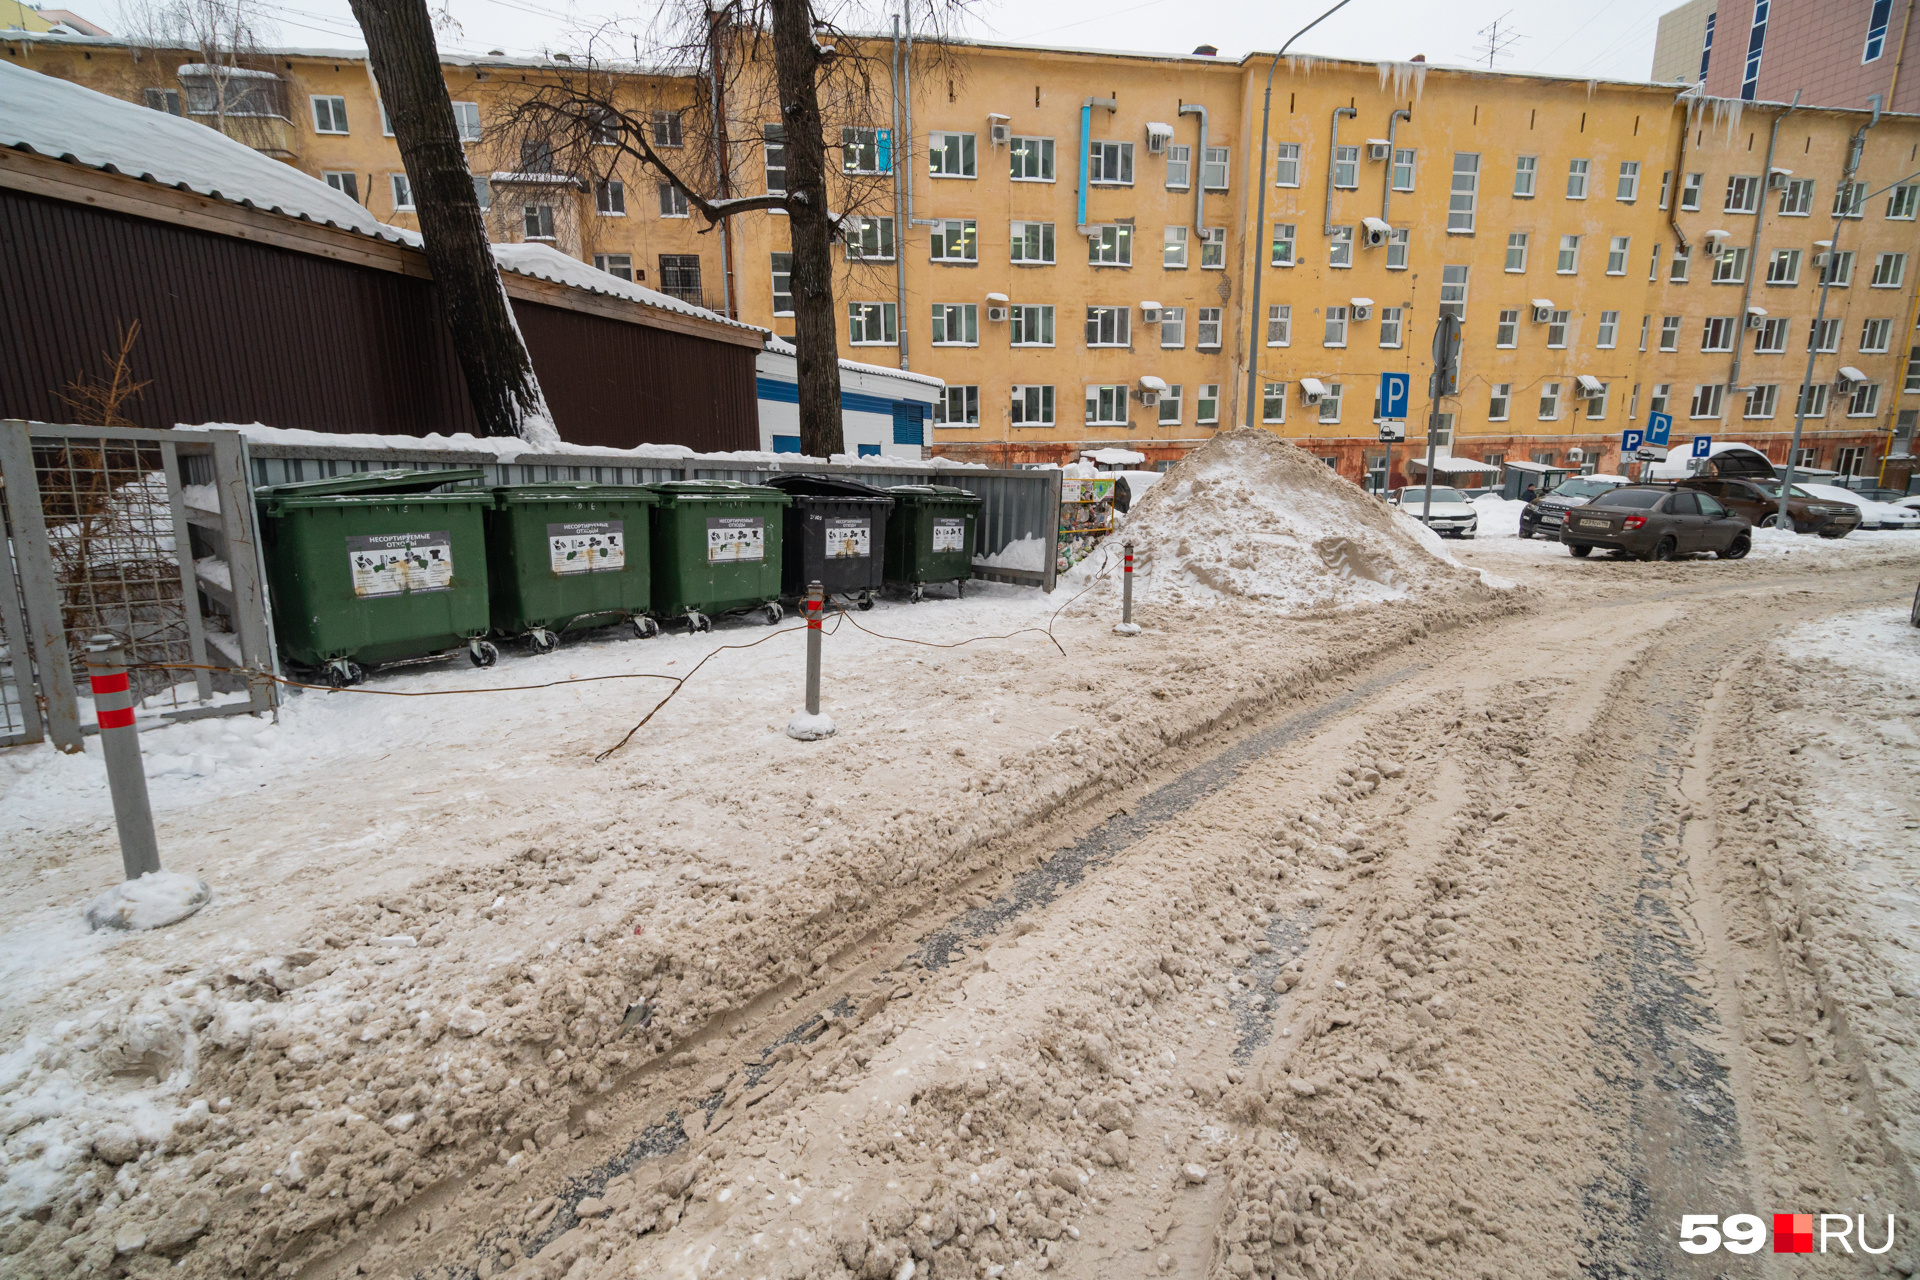 Около мусорки — небольшая кучка снега, кто ее туда отвез — неизвестно